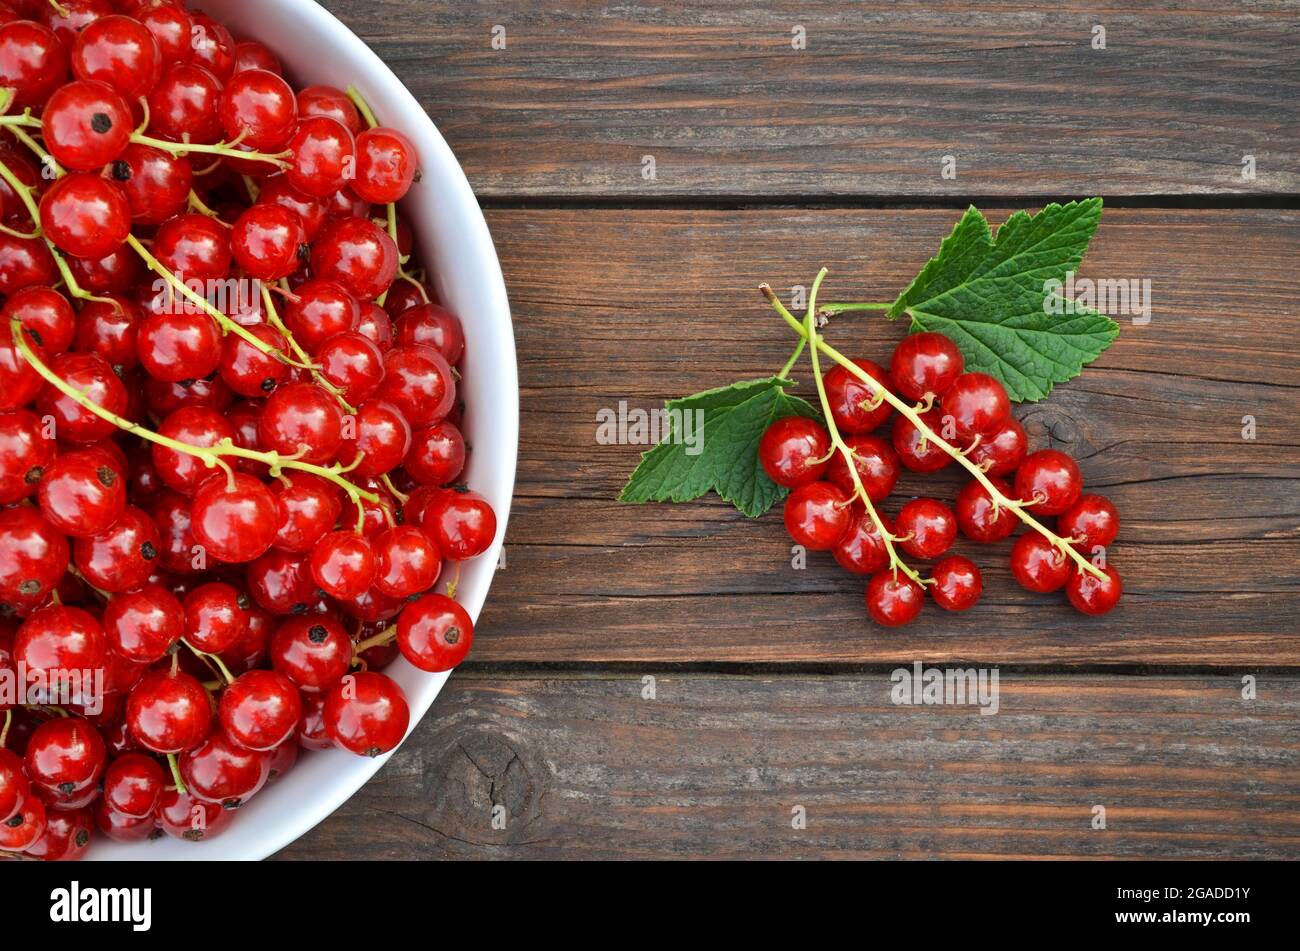 Frisch gepflückte reife Beeren von roten Johannisbeeren aus nächster Nähe auf einem Holztisch. Gesunde Ernährung Konzept. Stockfoto